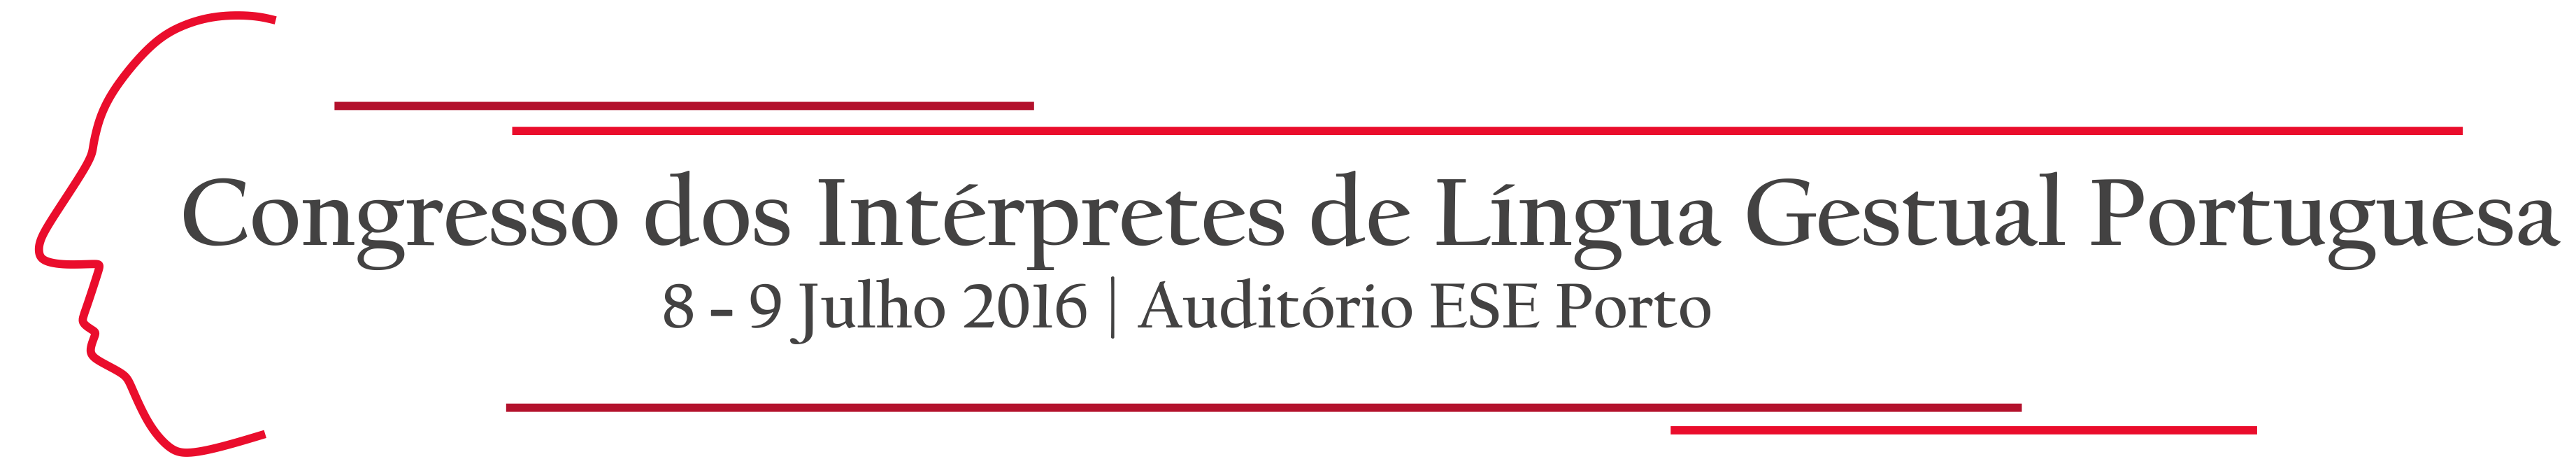 Congresso dos Intérpretes de Língua Gestual Portuguesa